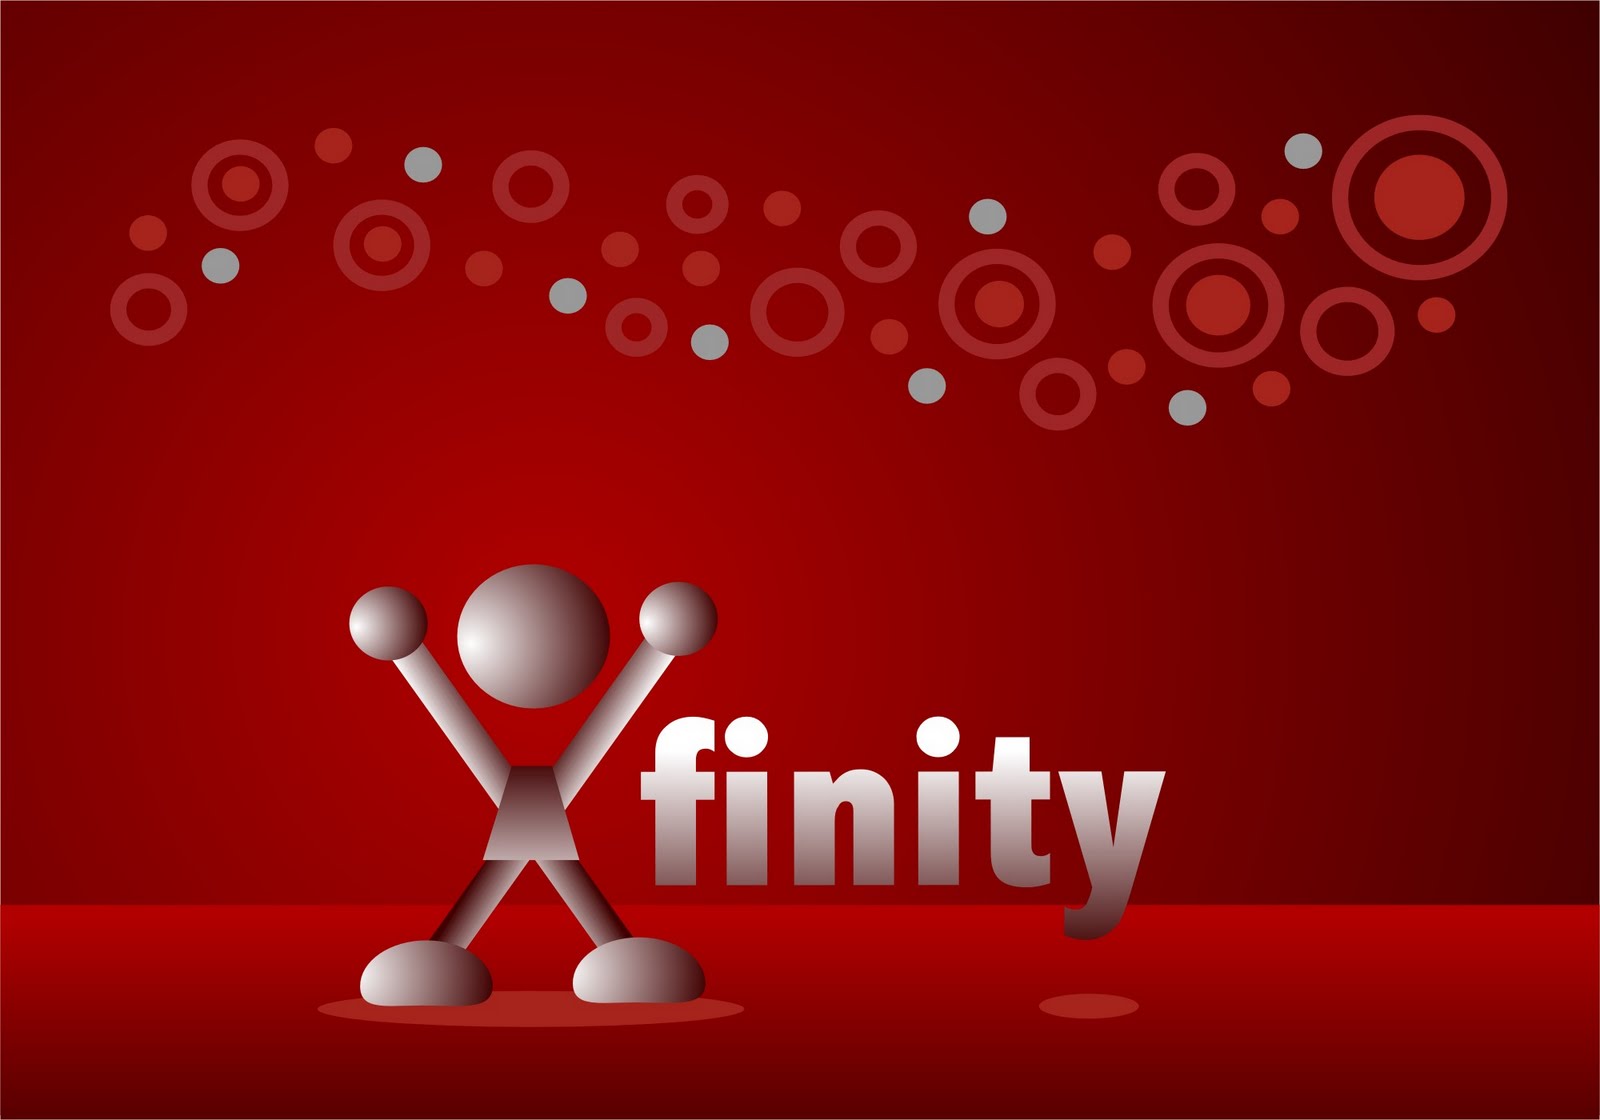 Xfinity X Cartoon Background 2